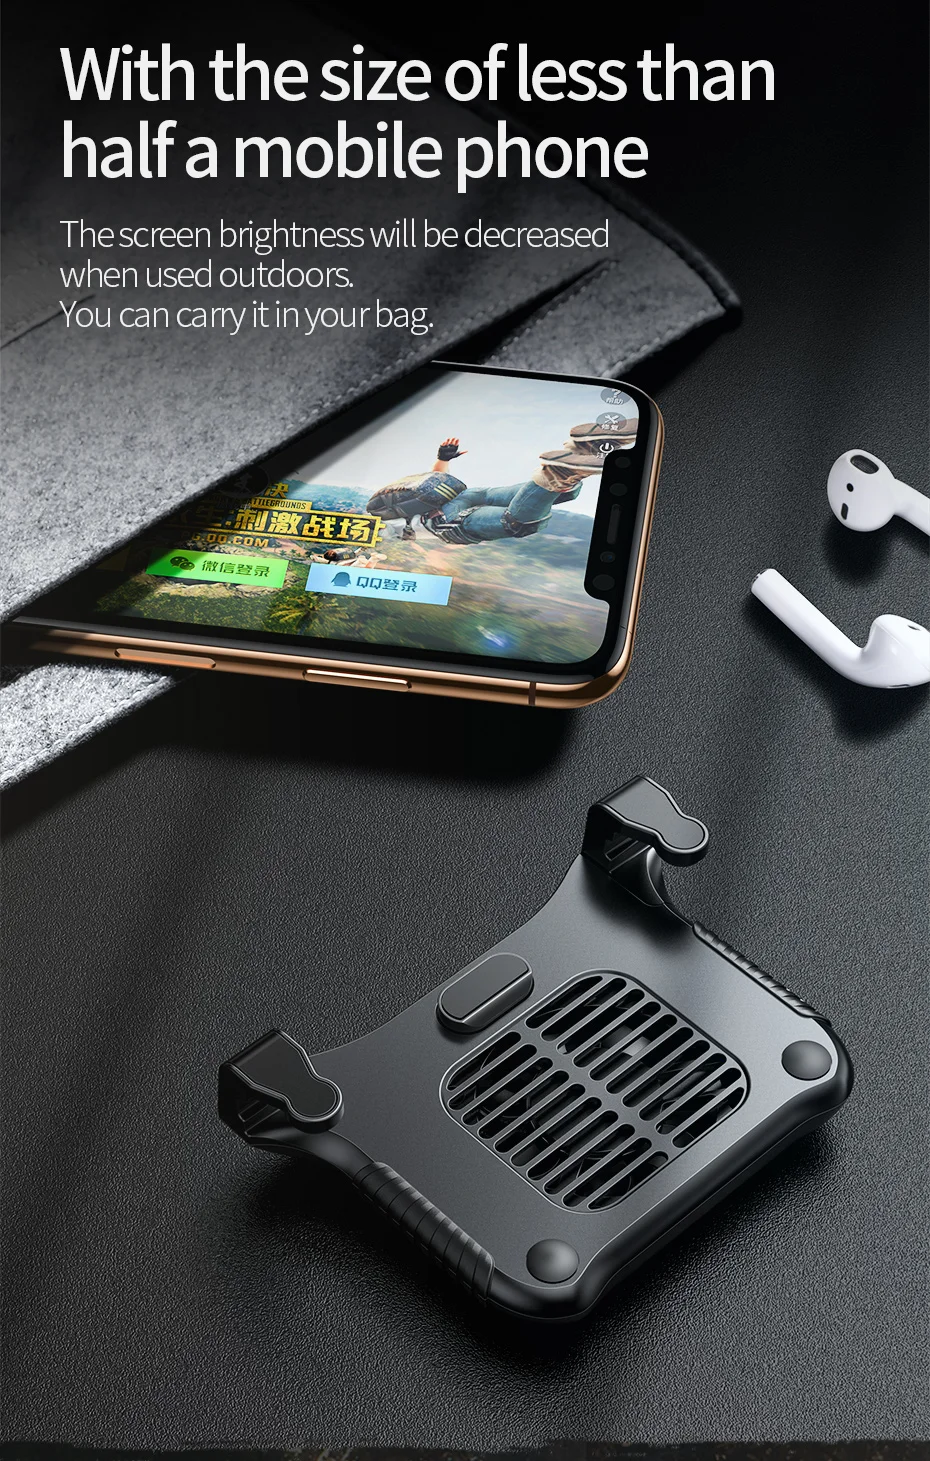 Baseus геймпад джойстик игровой курок для PUBG L1RL игровой шутер огонь кнопка телефон кулер для iPhone Andriod мобильный контроллер